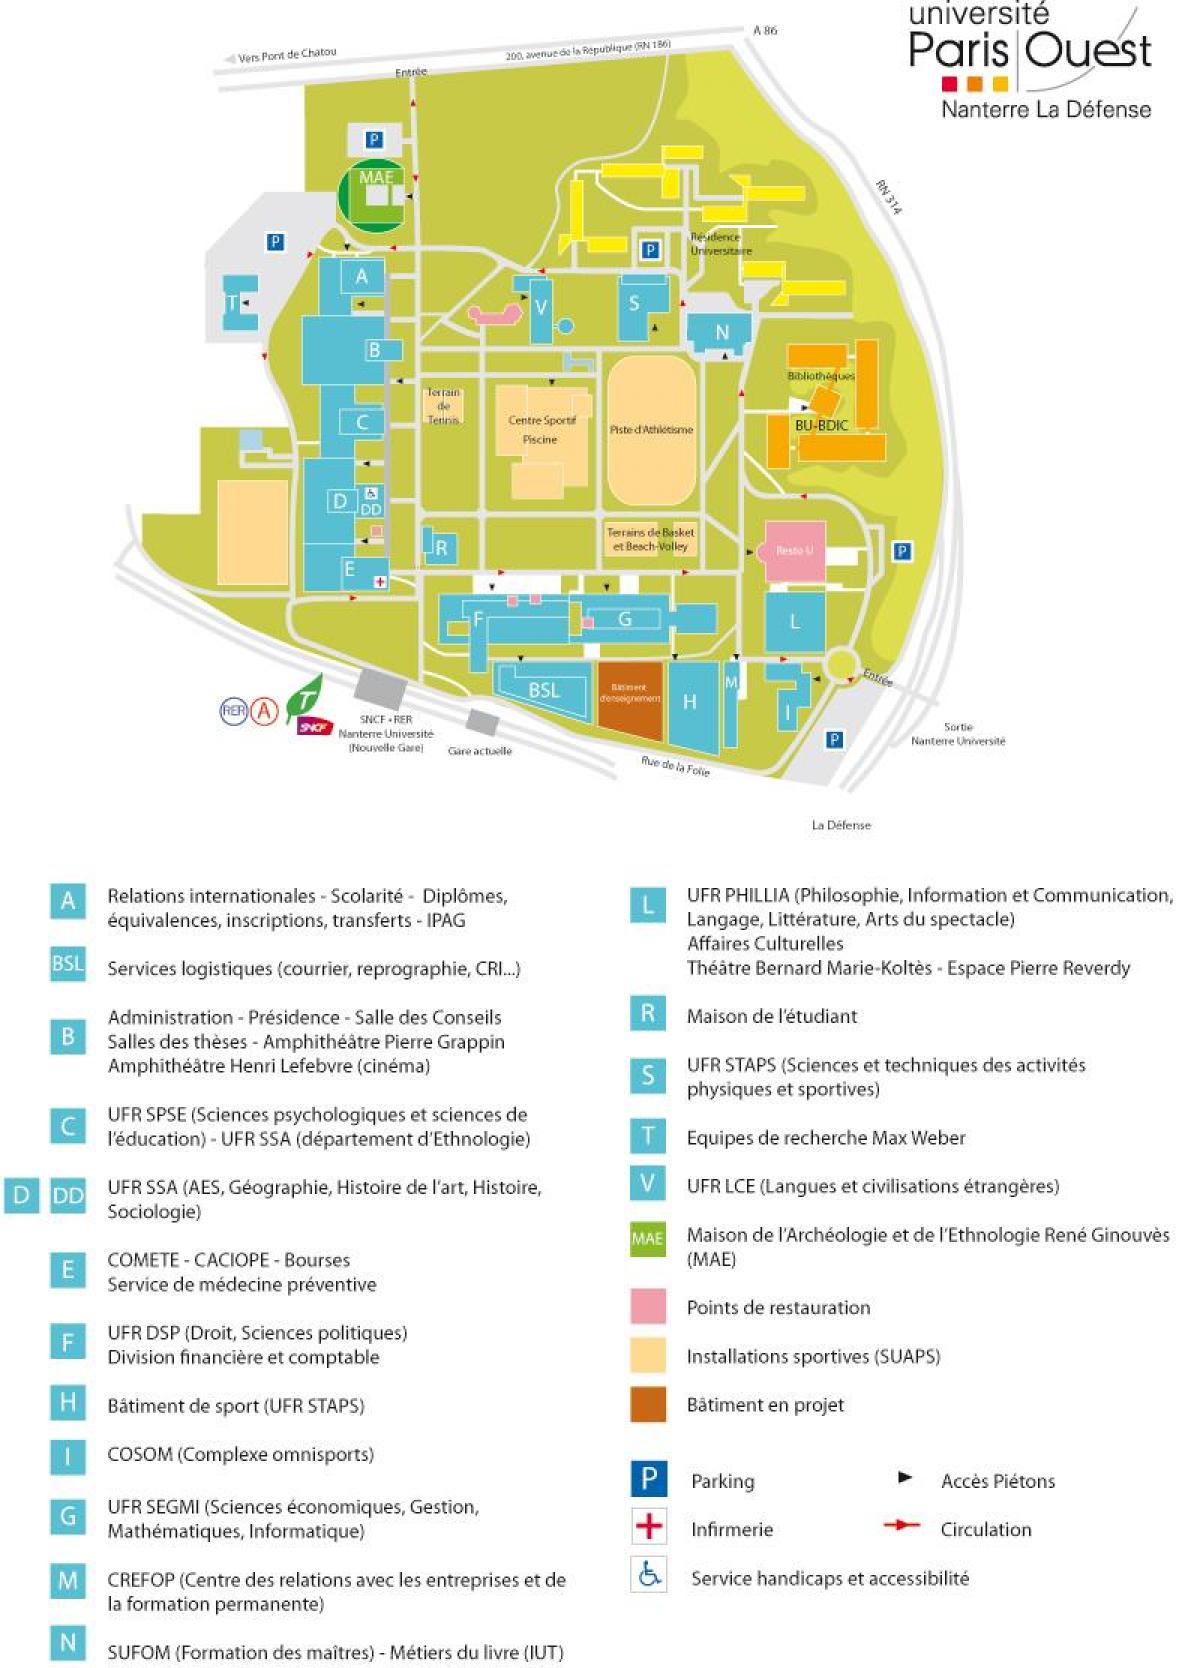 מפה של אוניברסיטת נאנטר